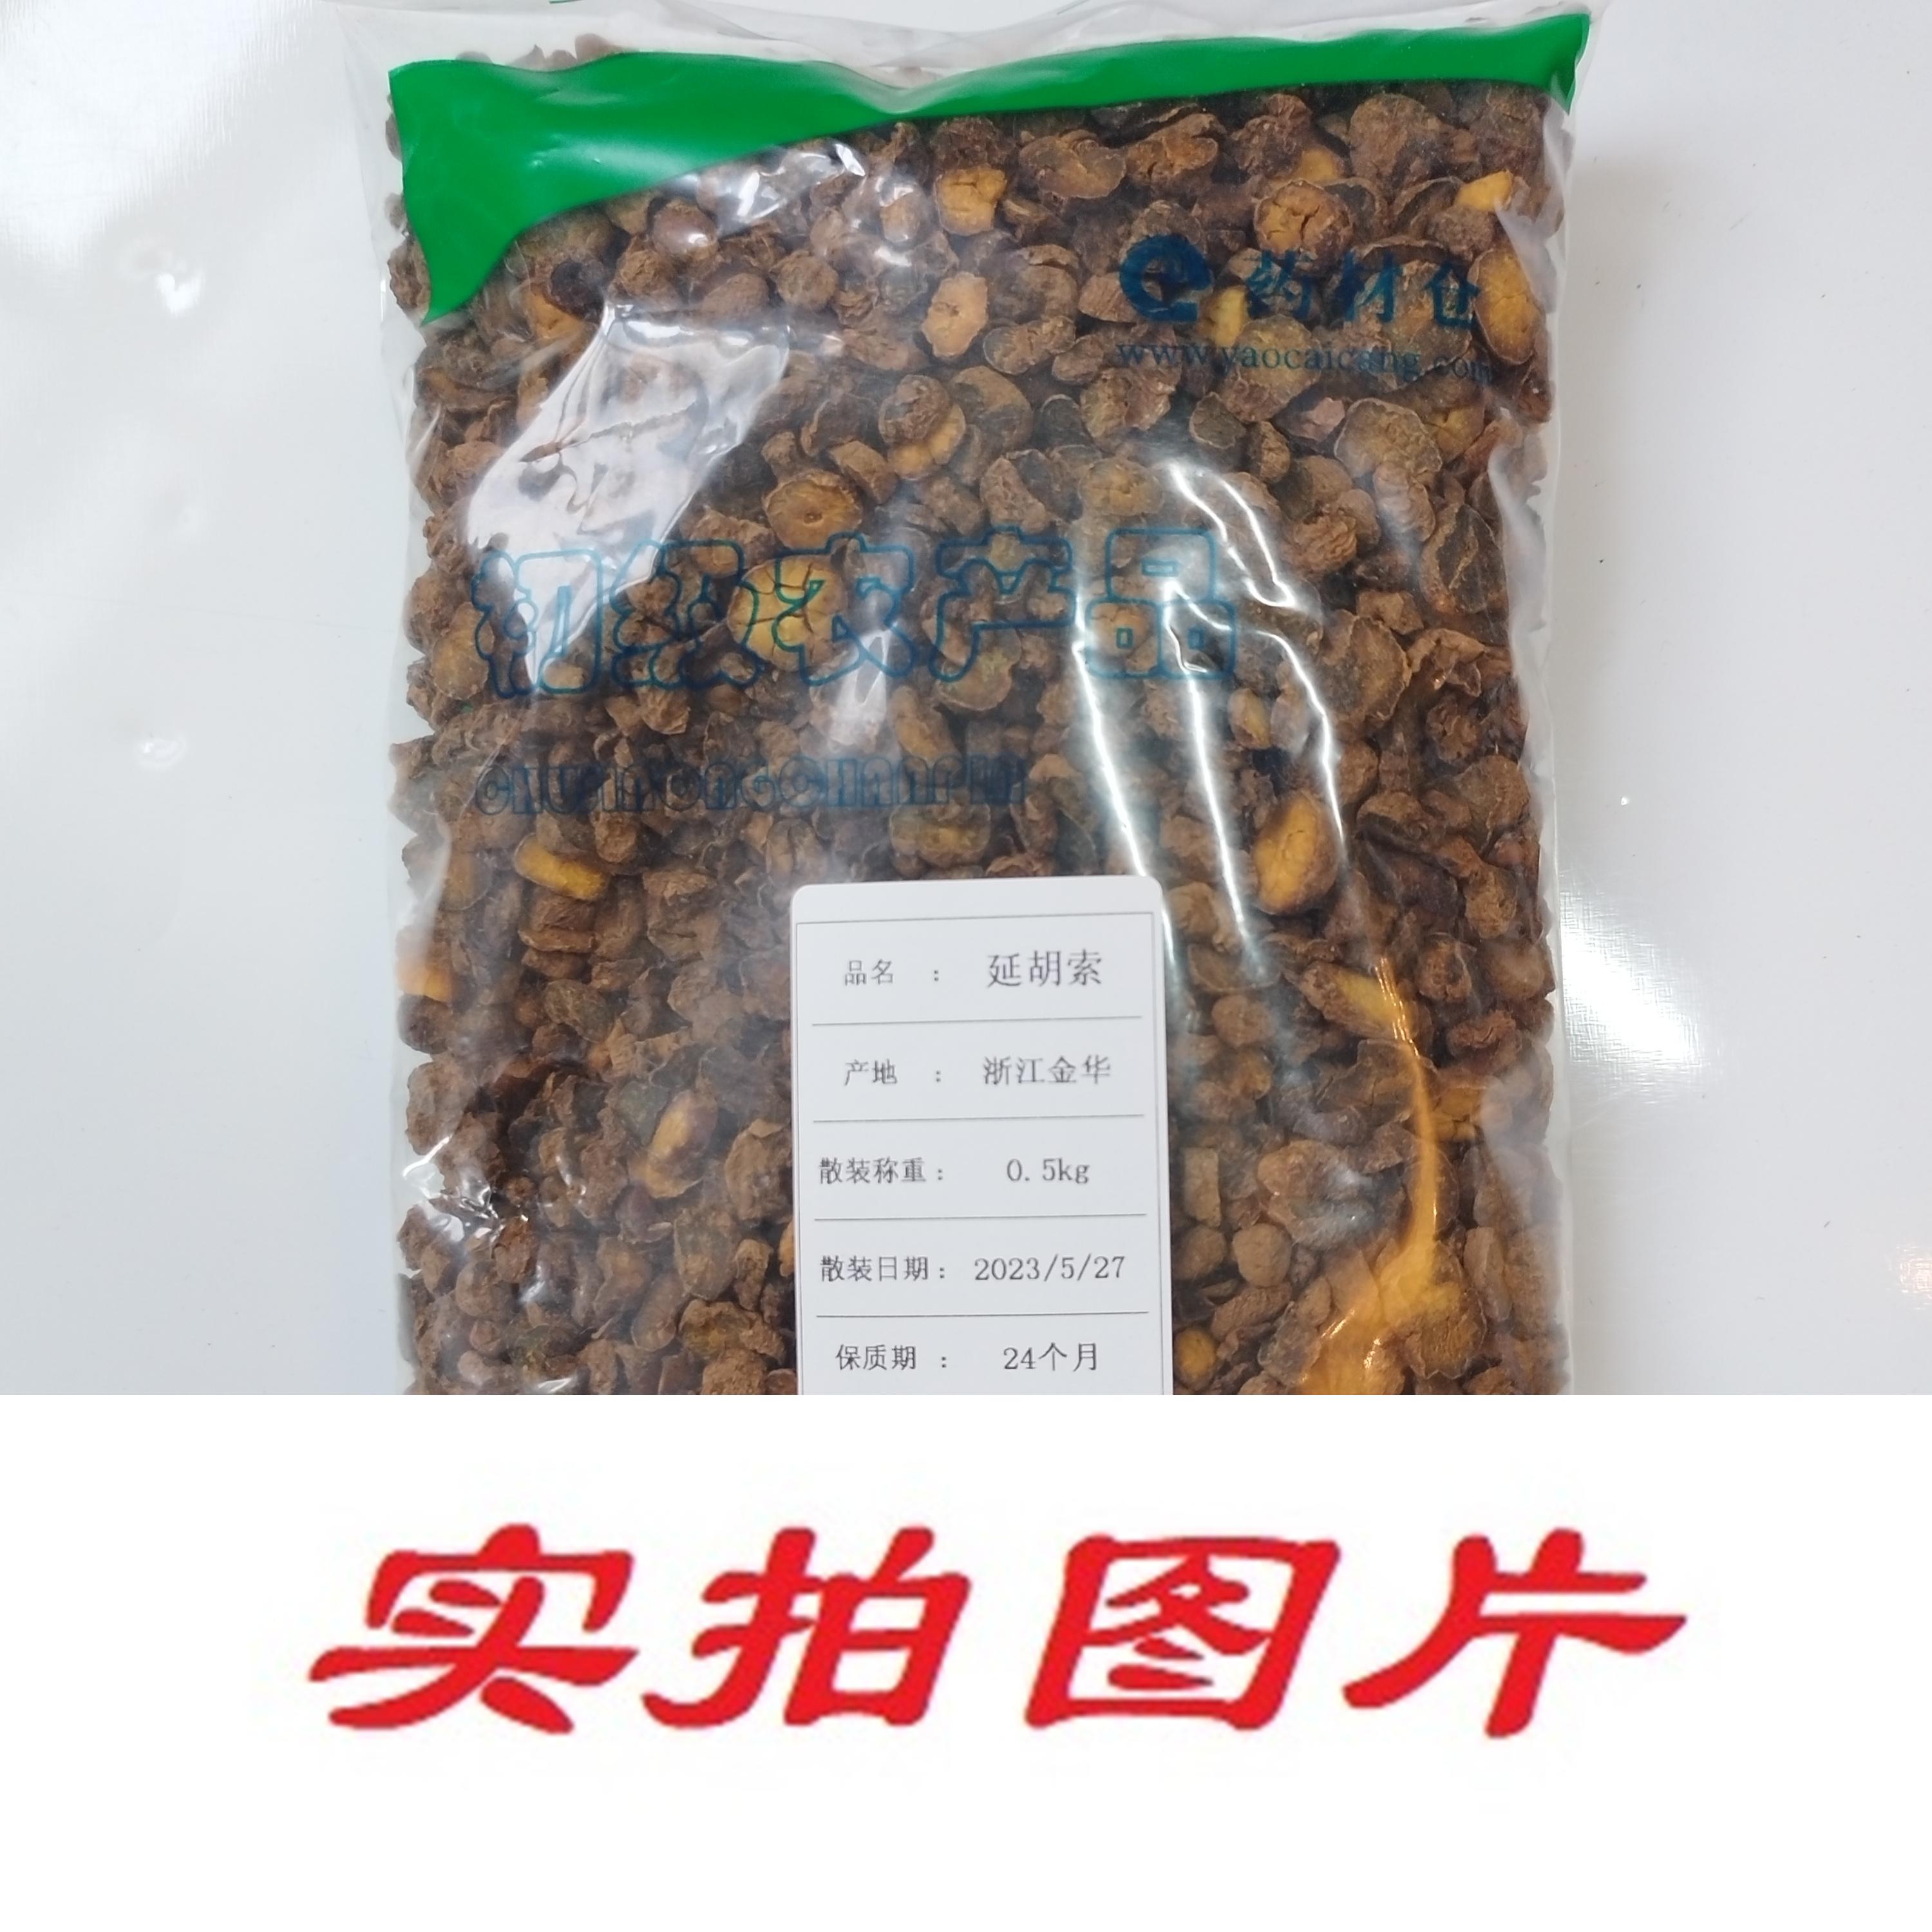 【】延胡索0.5kg-农副产品